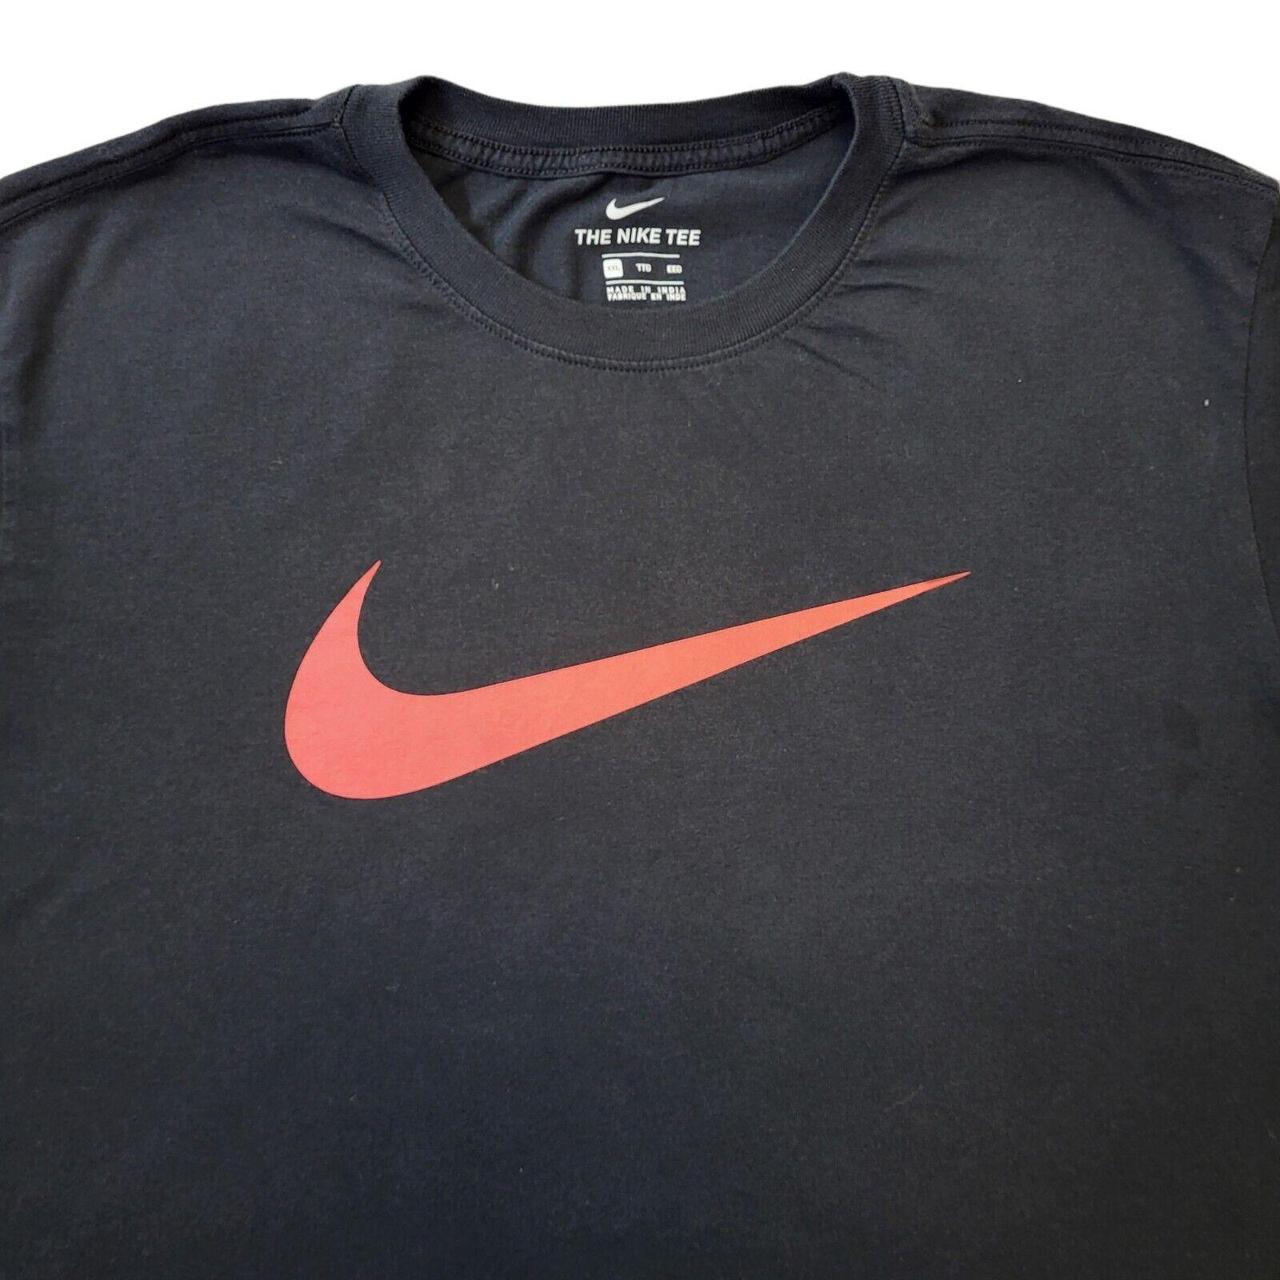 Nike TShirt Nike TShirt Nike Short Sleeve Top 90s... - Depop